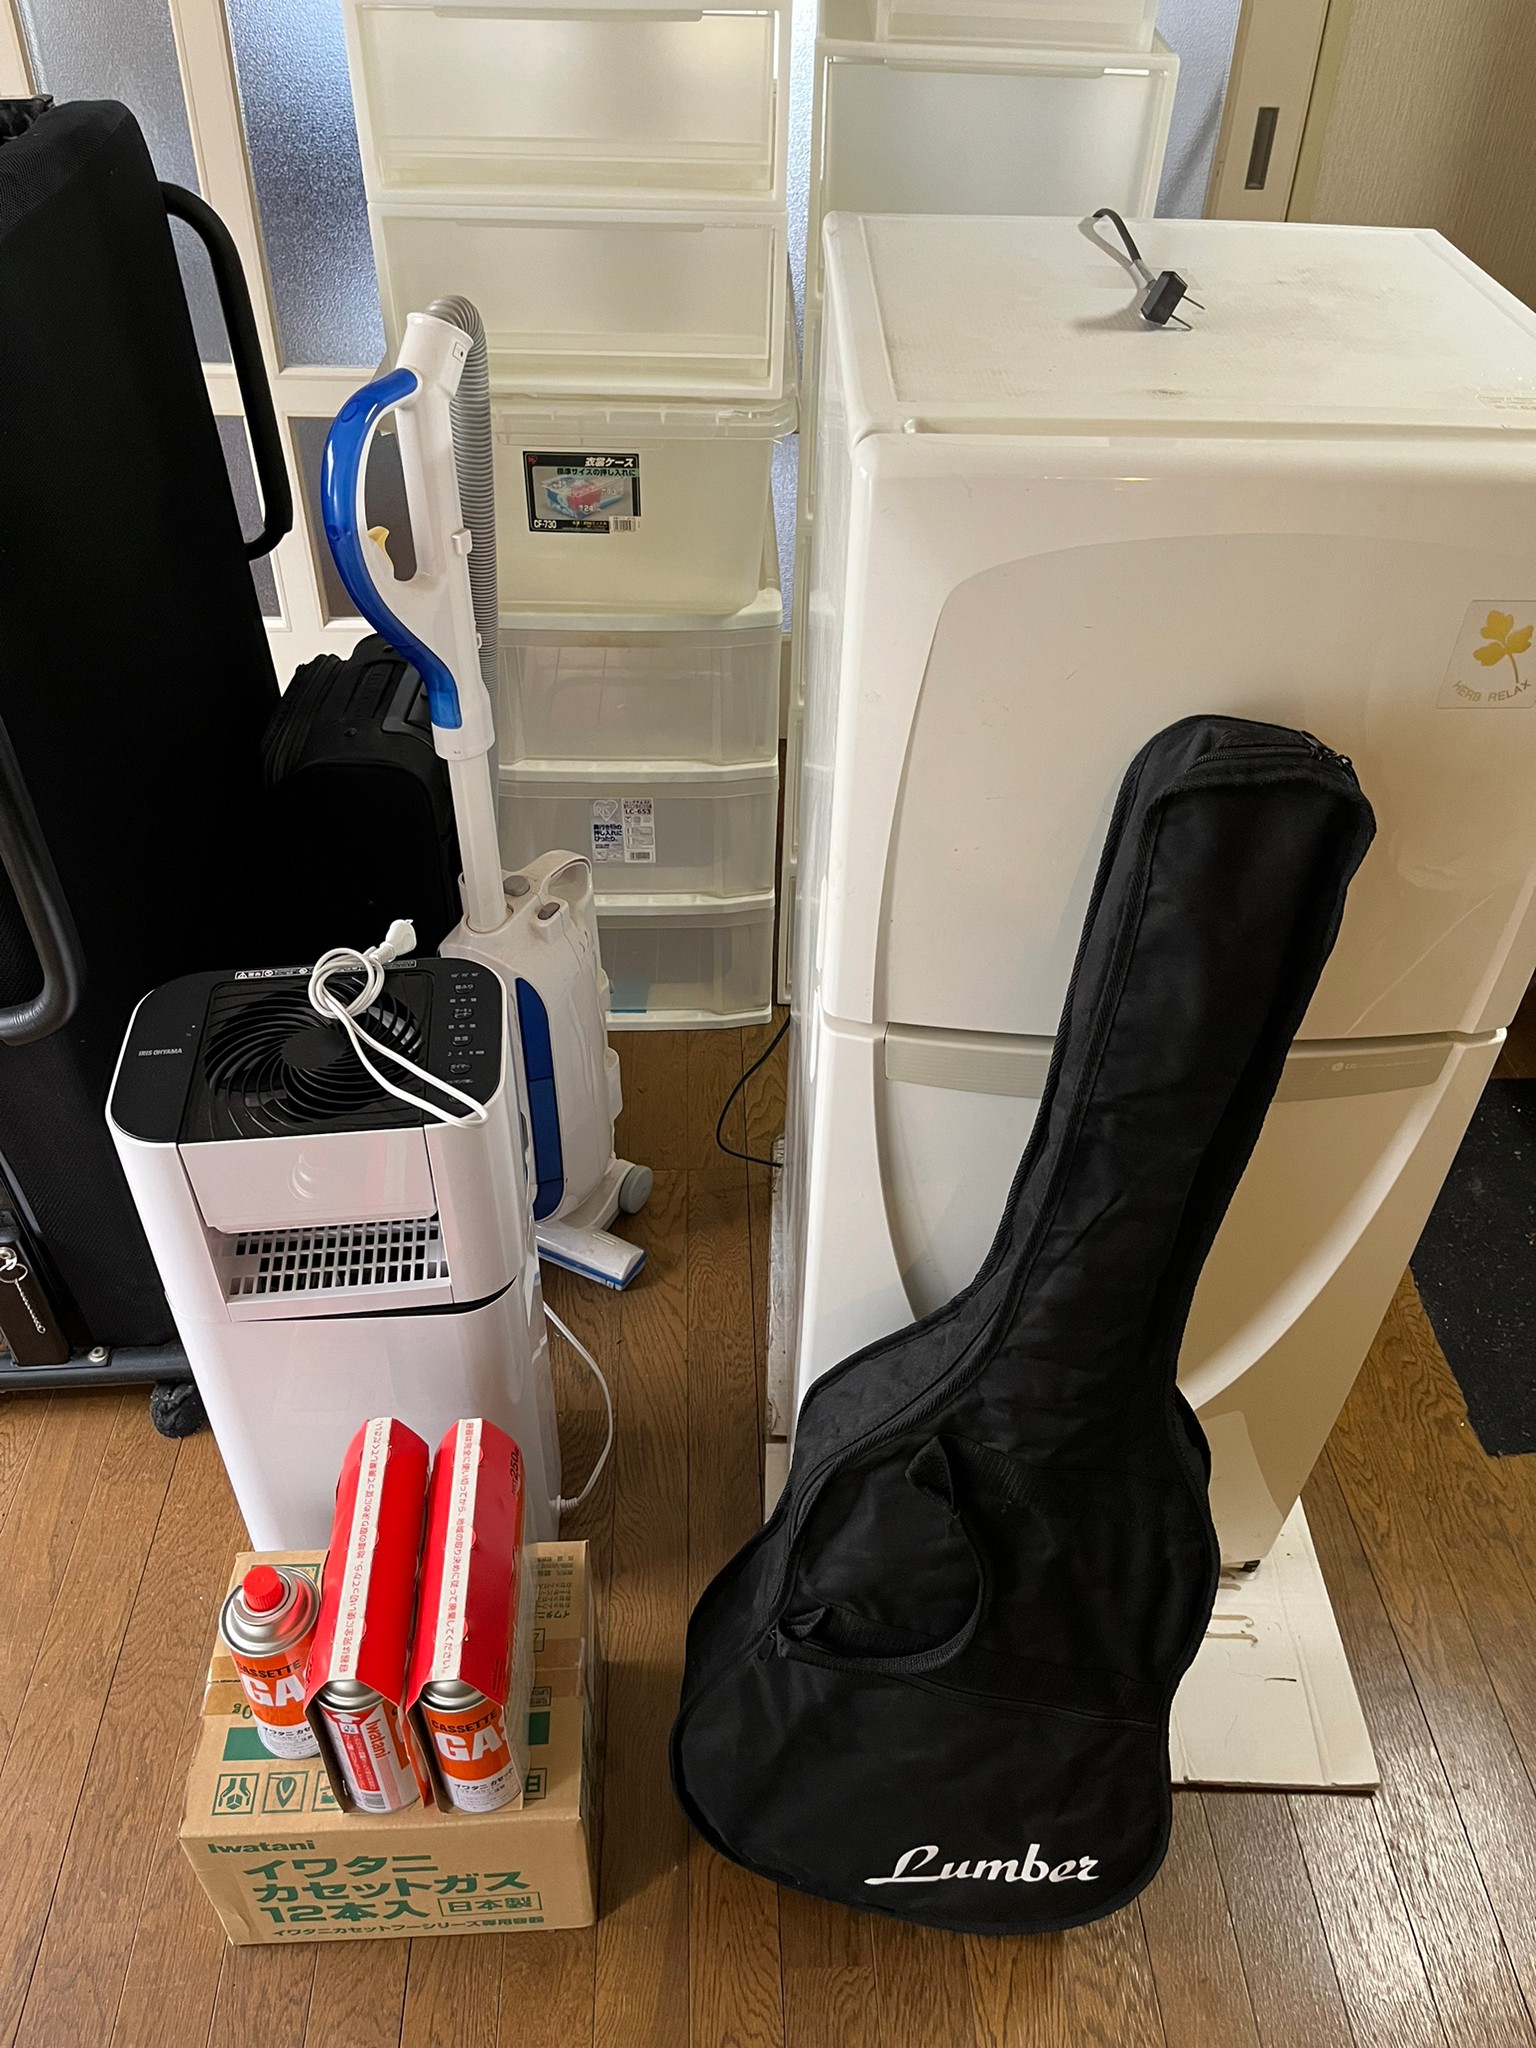 ギター、カセットコンロ用ガス、空気清浄機、掃除機、冷蔵庫、キャリーケースの回収前の状態